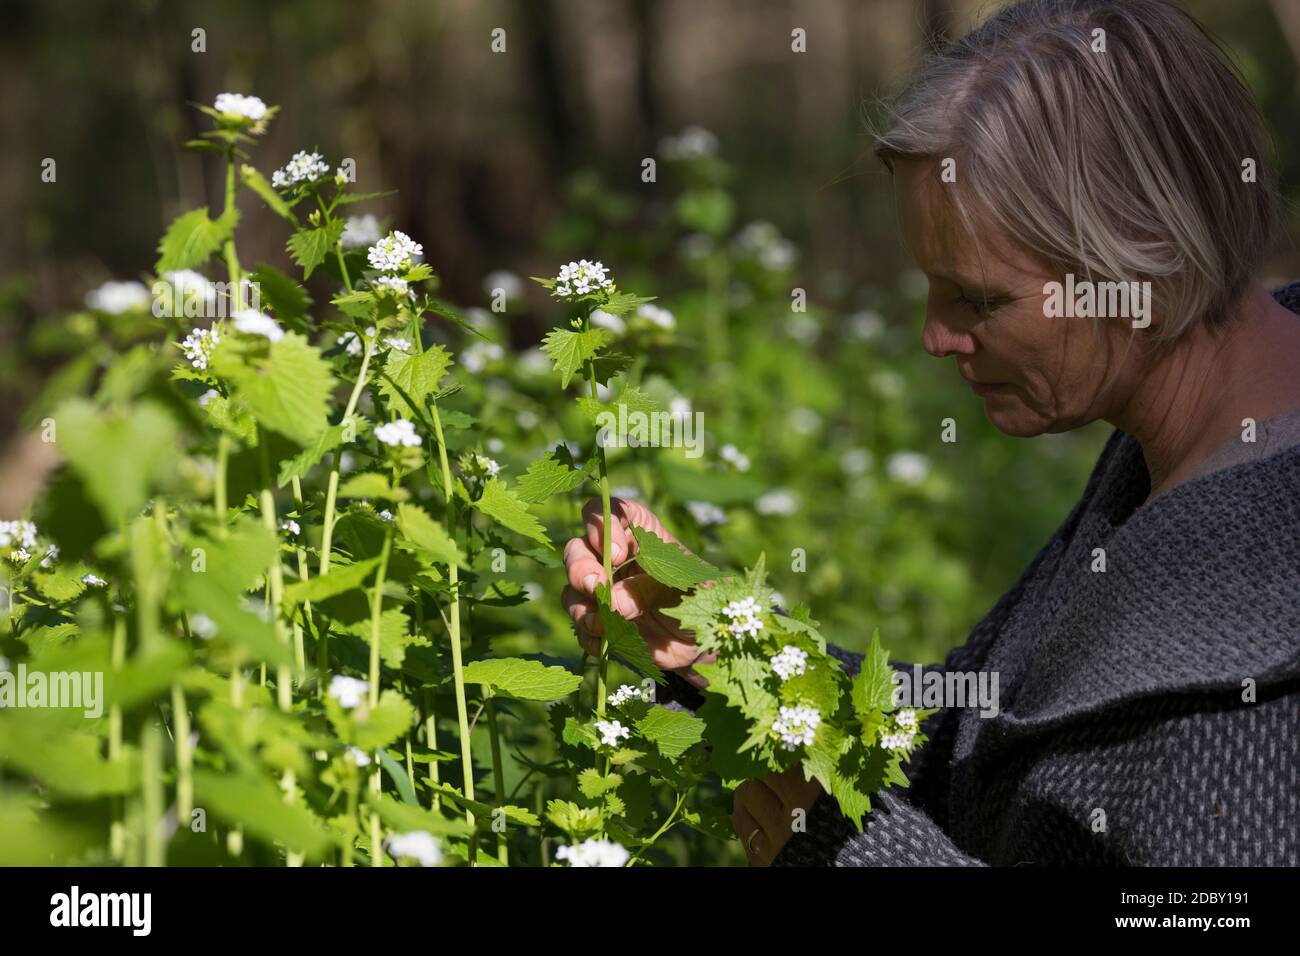 Knoblauchsrauke-Ernte, Kräuterernte, Frau in einem Bestand von Knoblauchsrauke in einem Wald, Kräuter sammeln, Knoblauchsrauke, Gewöhnliche Knoblauchs Stock Photo